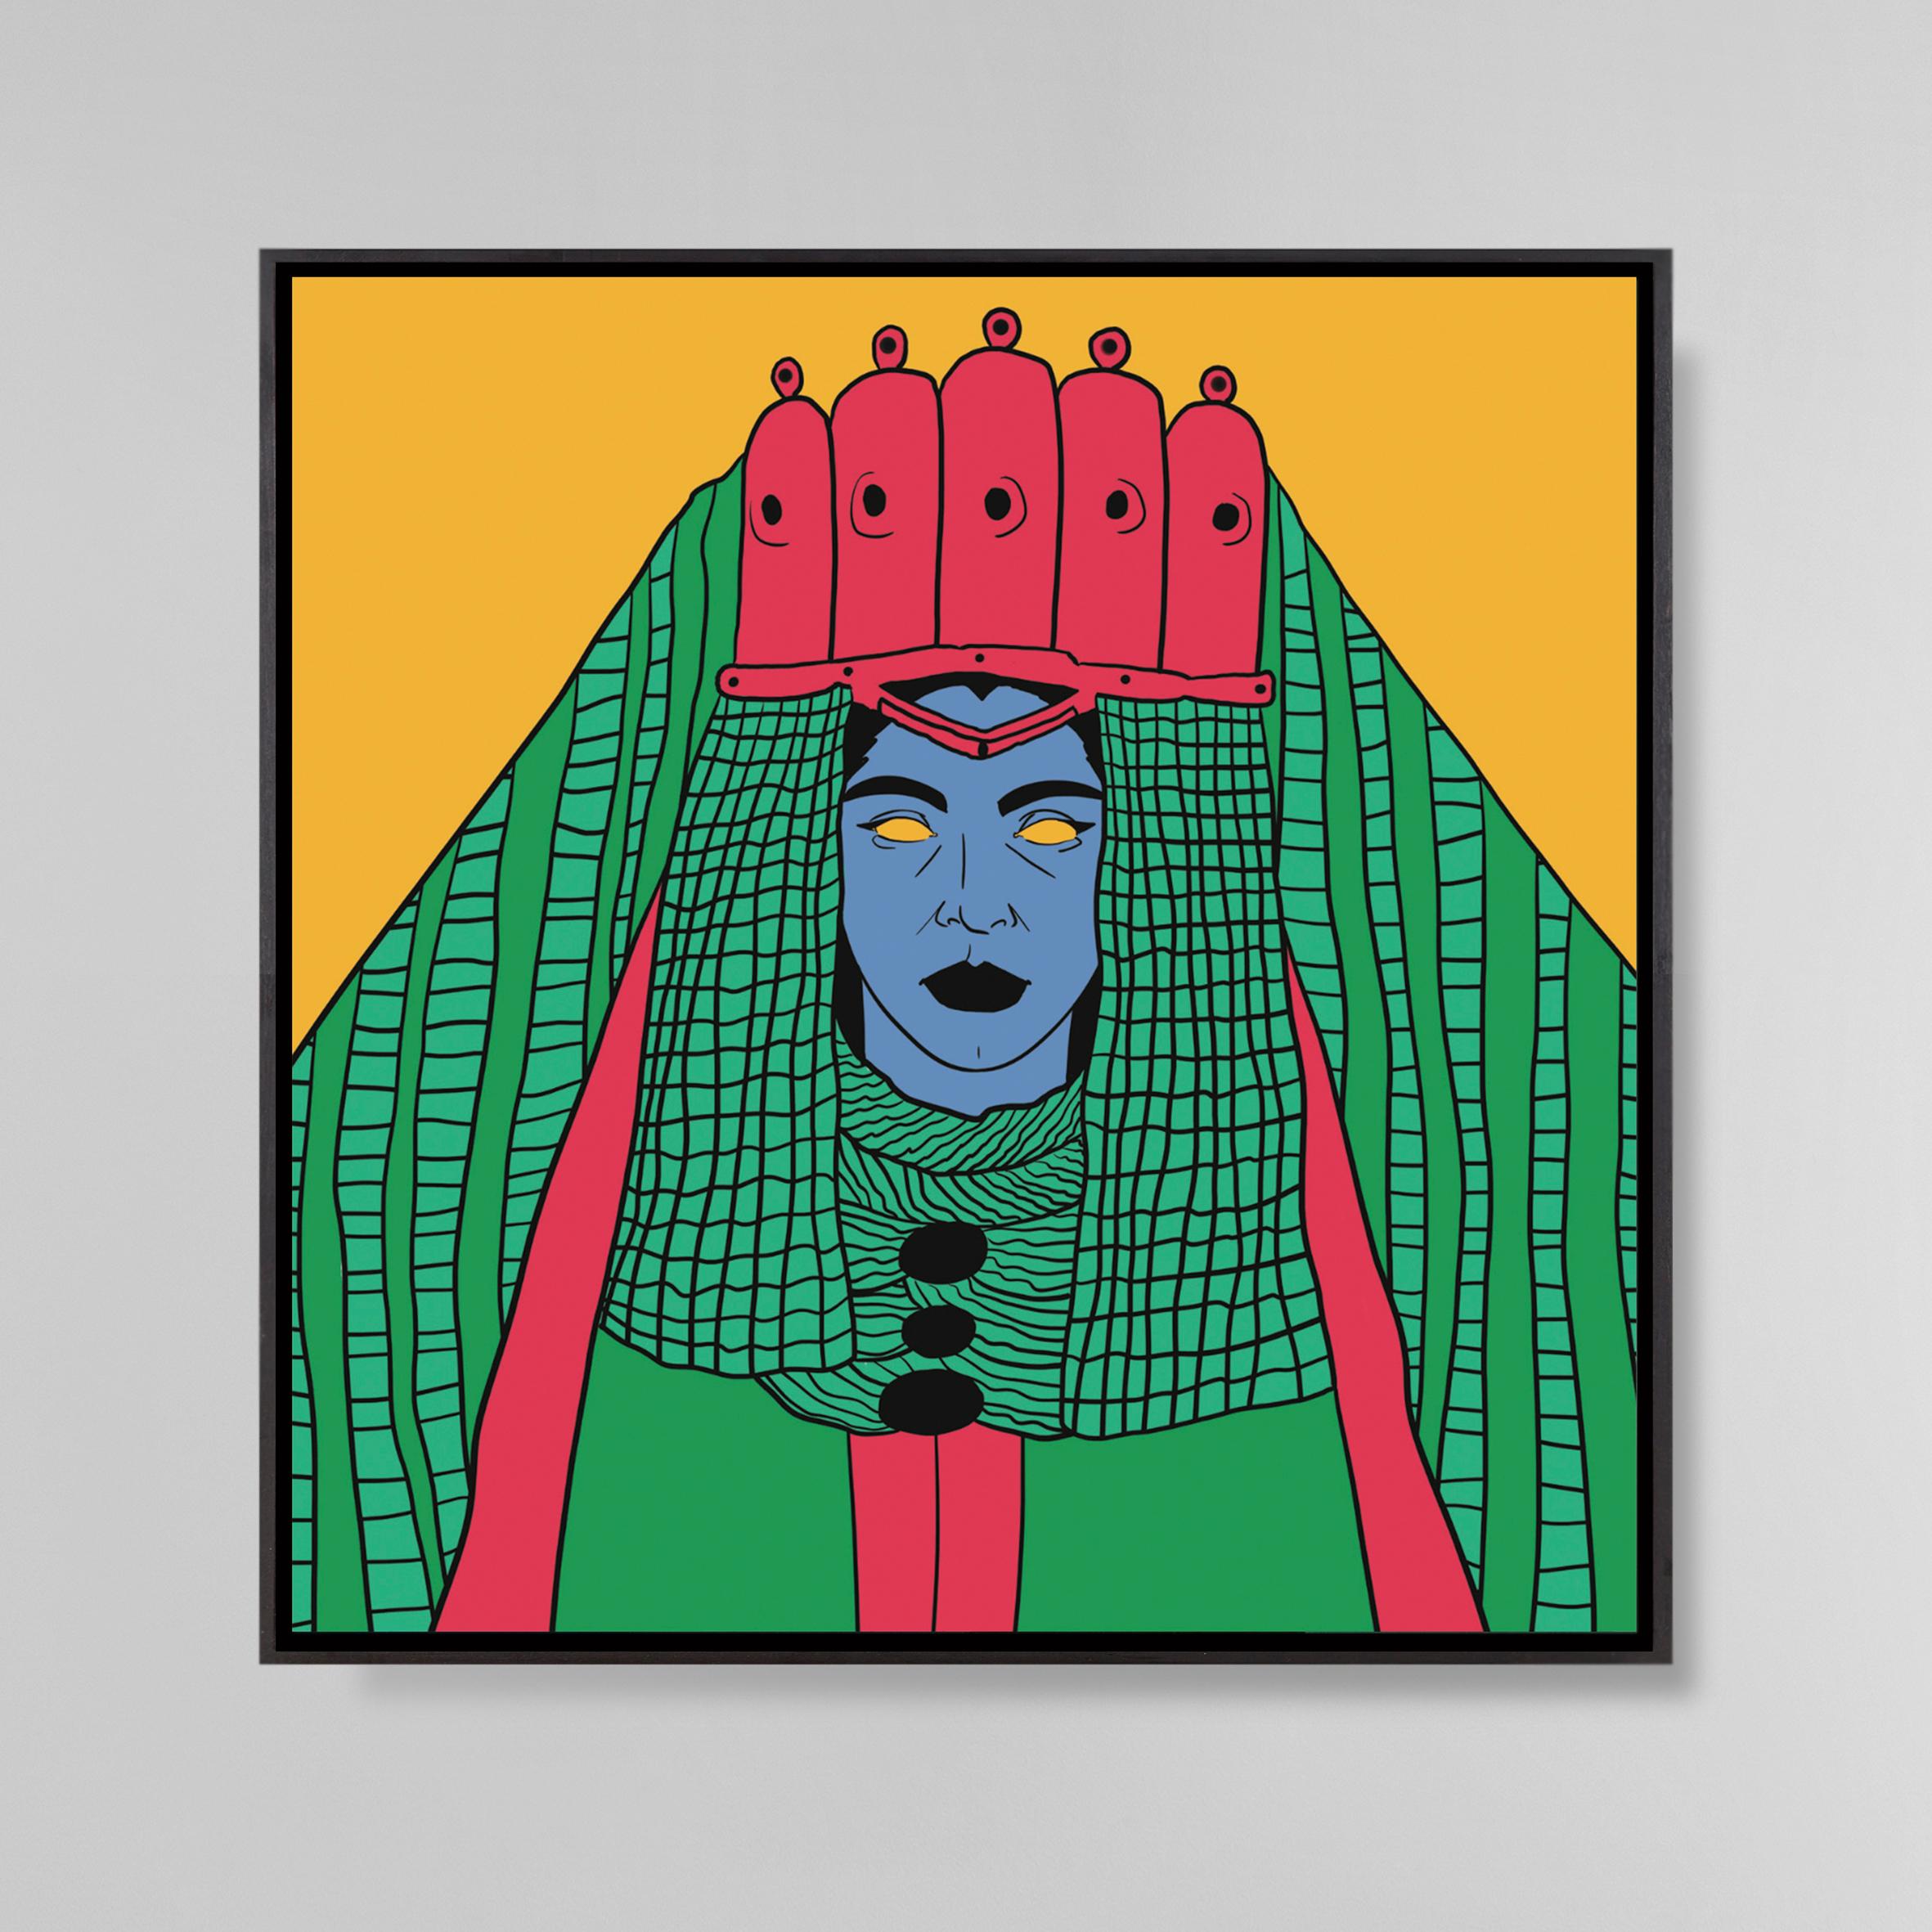 Femme fassia, 2019
Dessin digital sur papier
100 x 100 cm